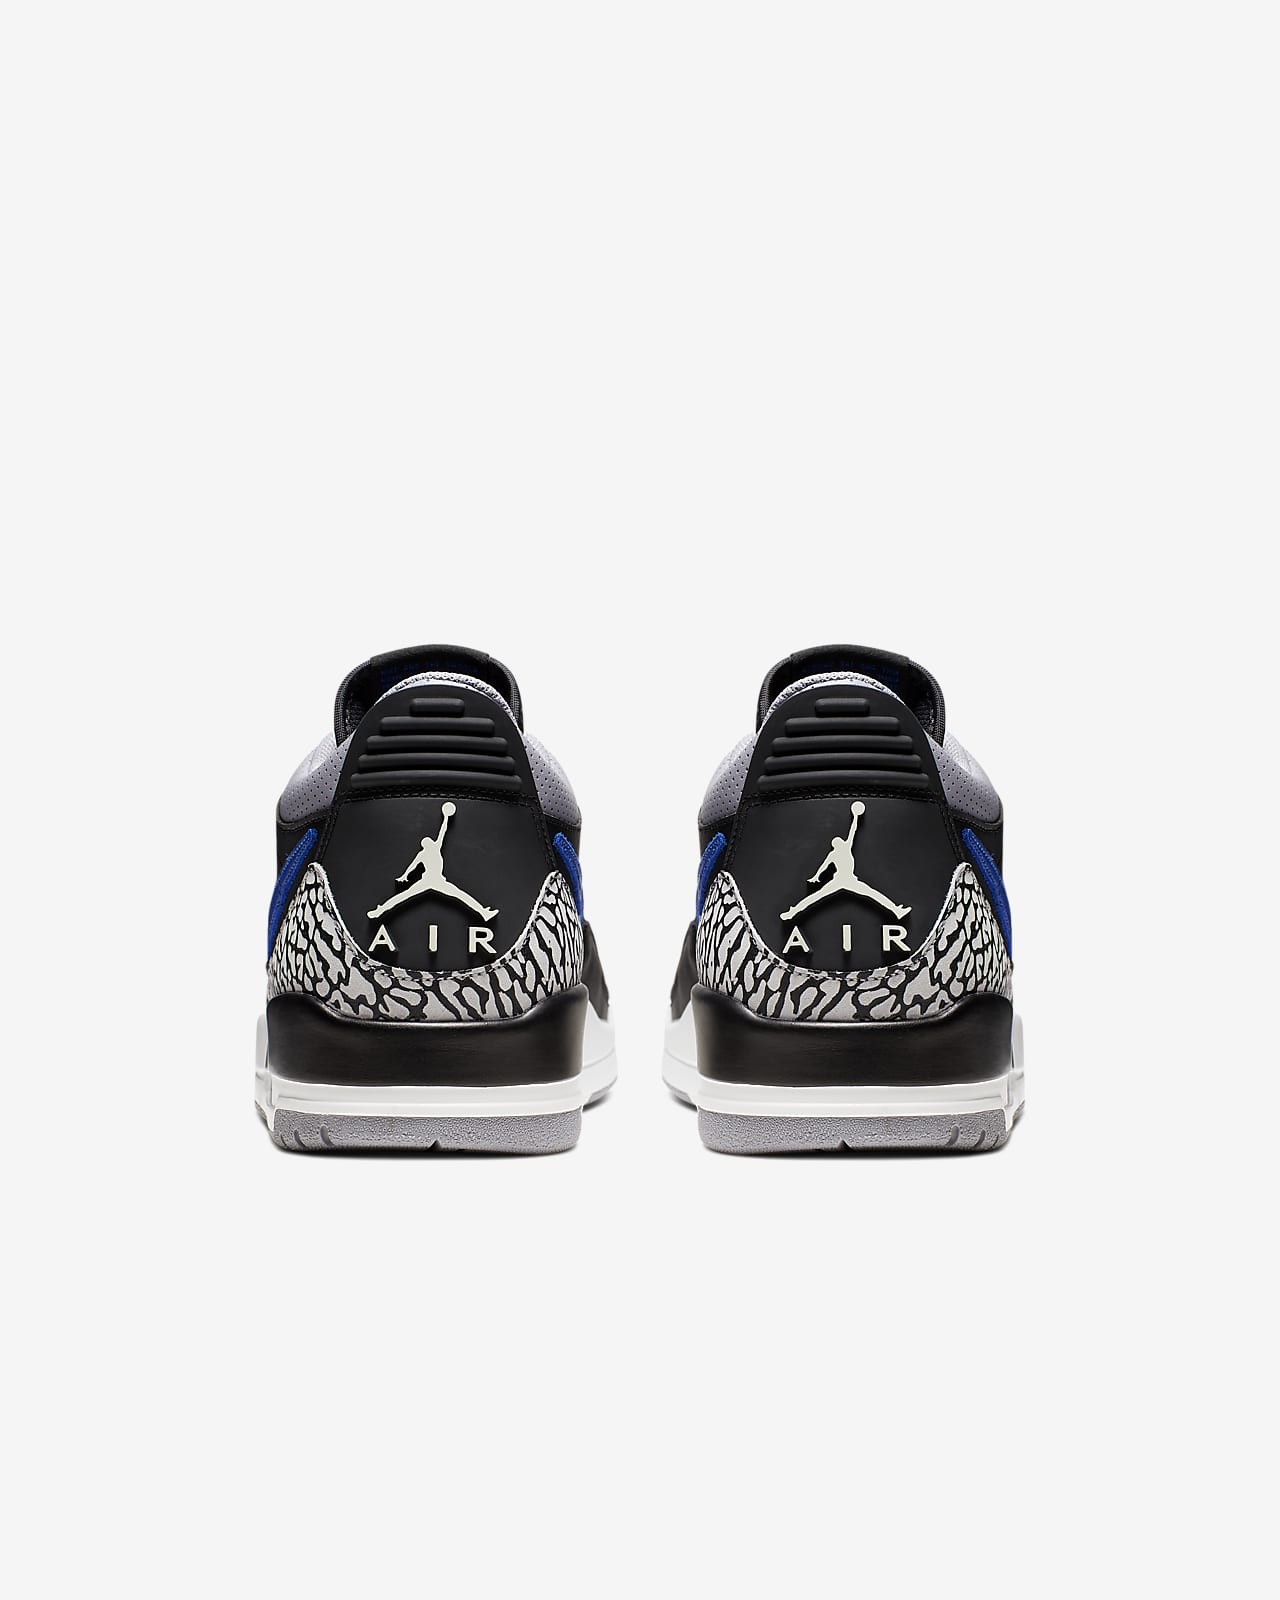 Air Jordan Legacy 312 Low Men S Shoe Nike Id